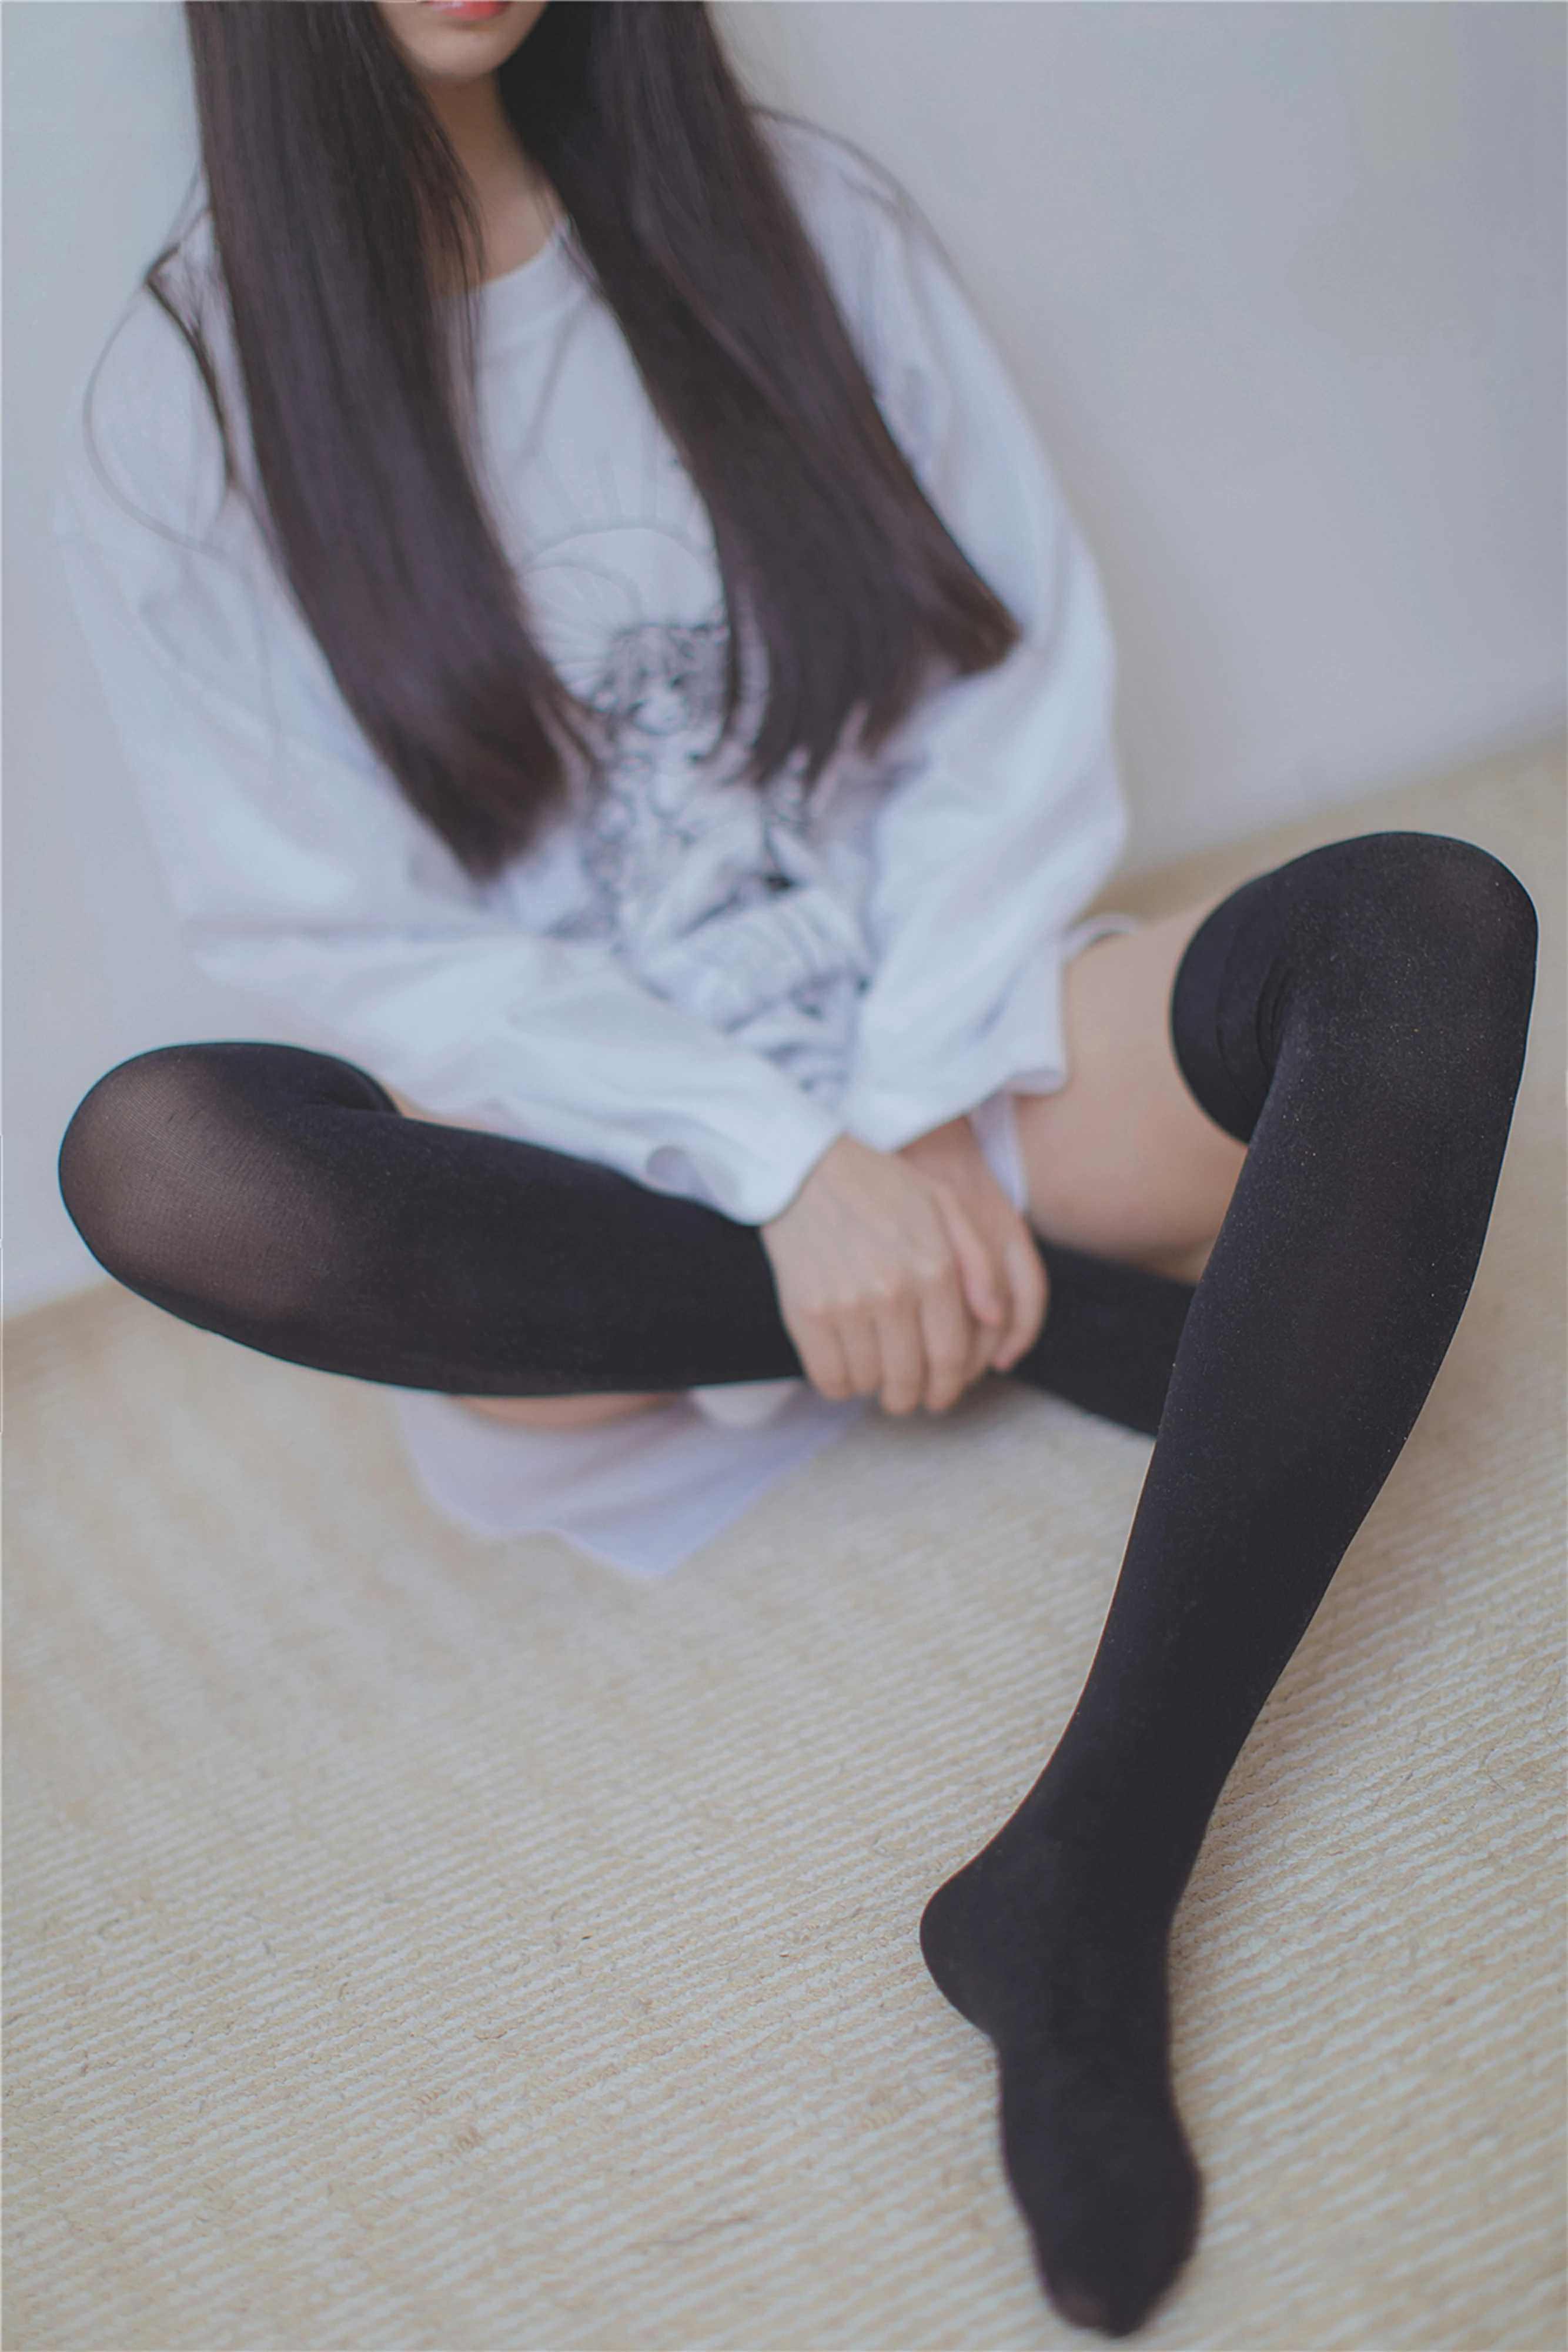 [风之领域]NO.079 清纯可爱小萝莉 白色连身衣加黑色丝袜美腿私房写真集,